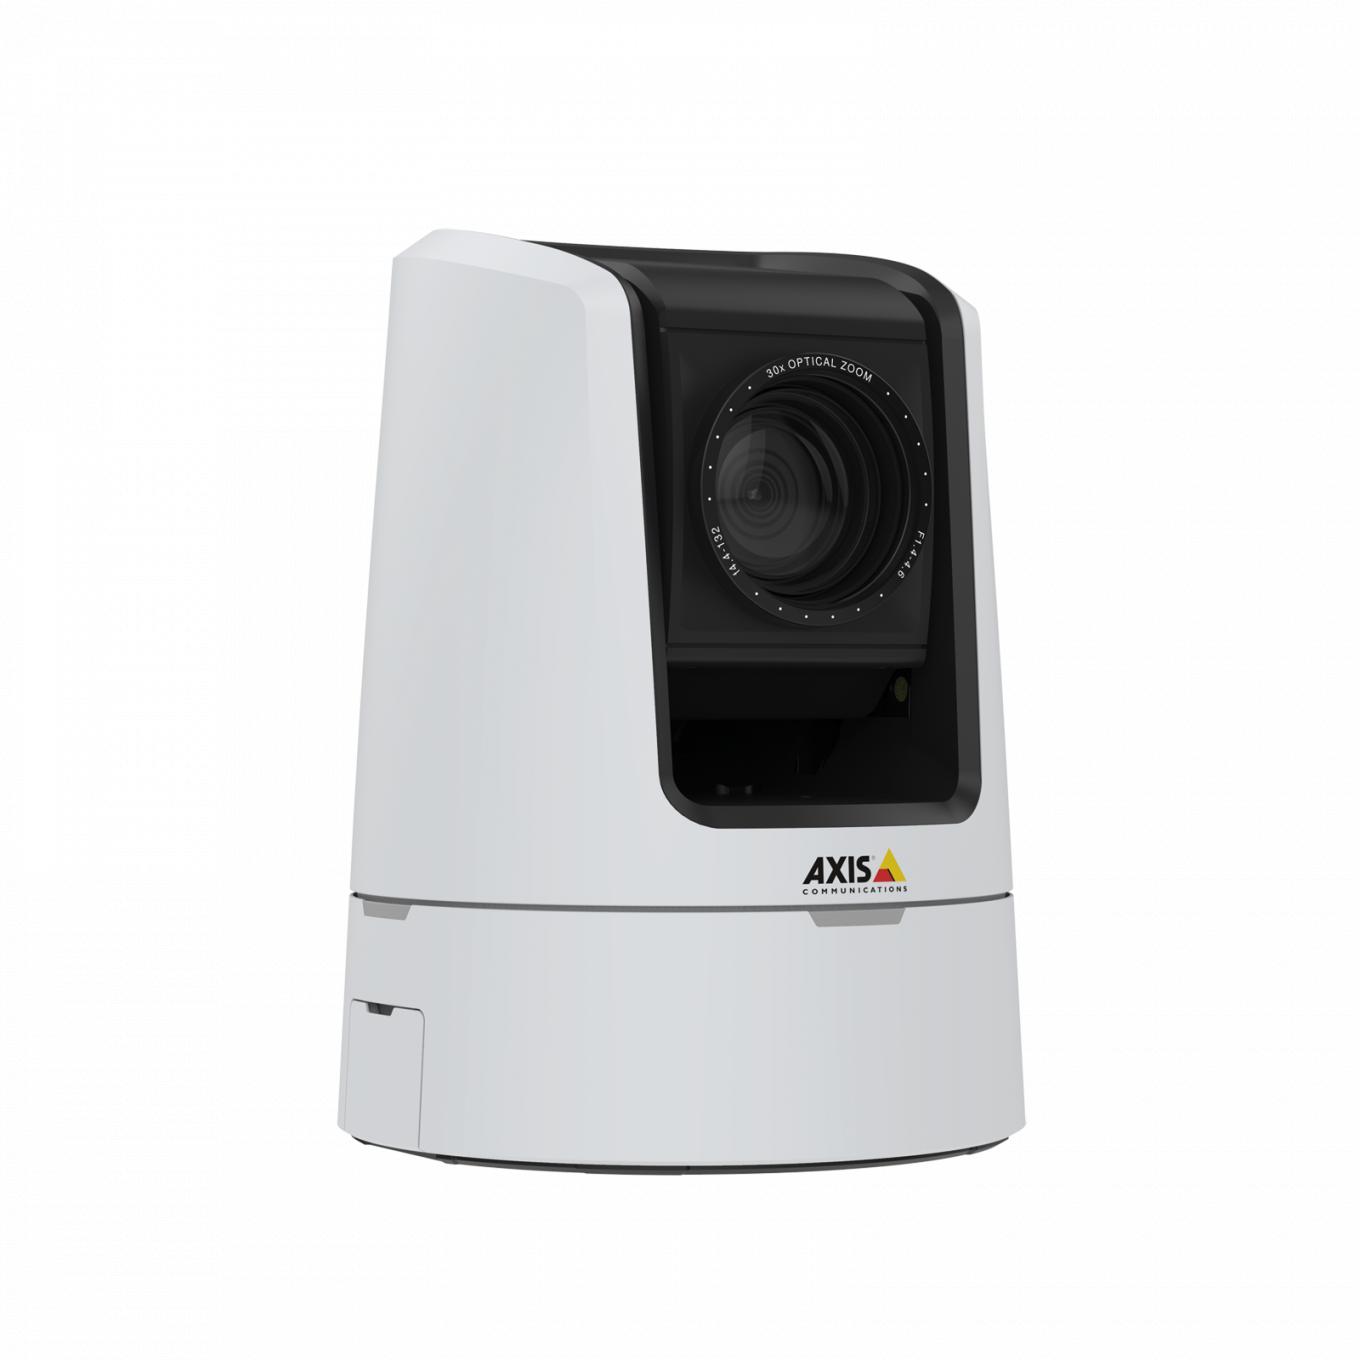 AXIS V5925 PTZ Network Camera offre HDTV 1080p di qualità broadcast.